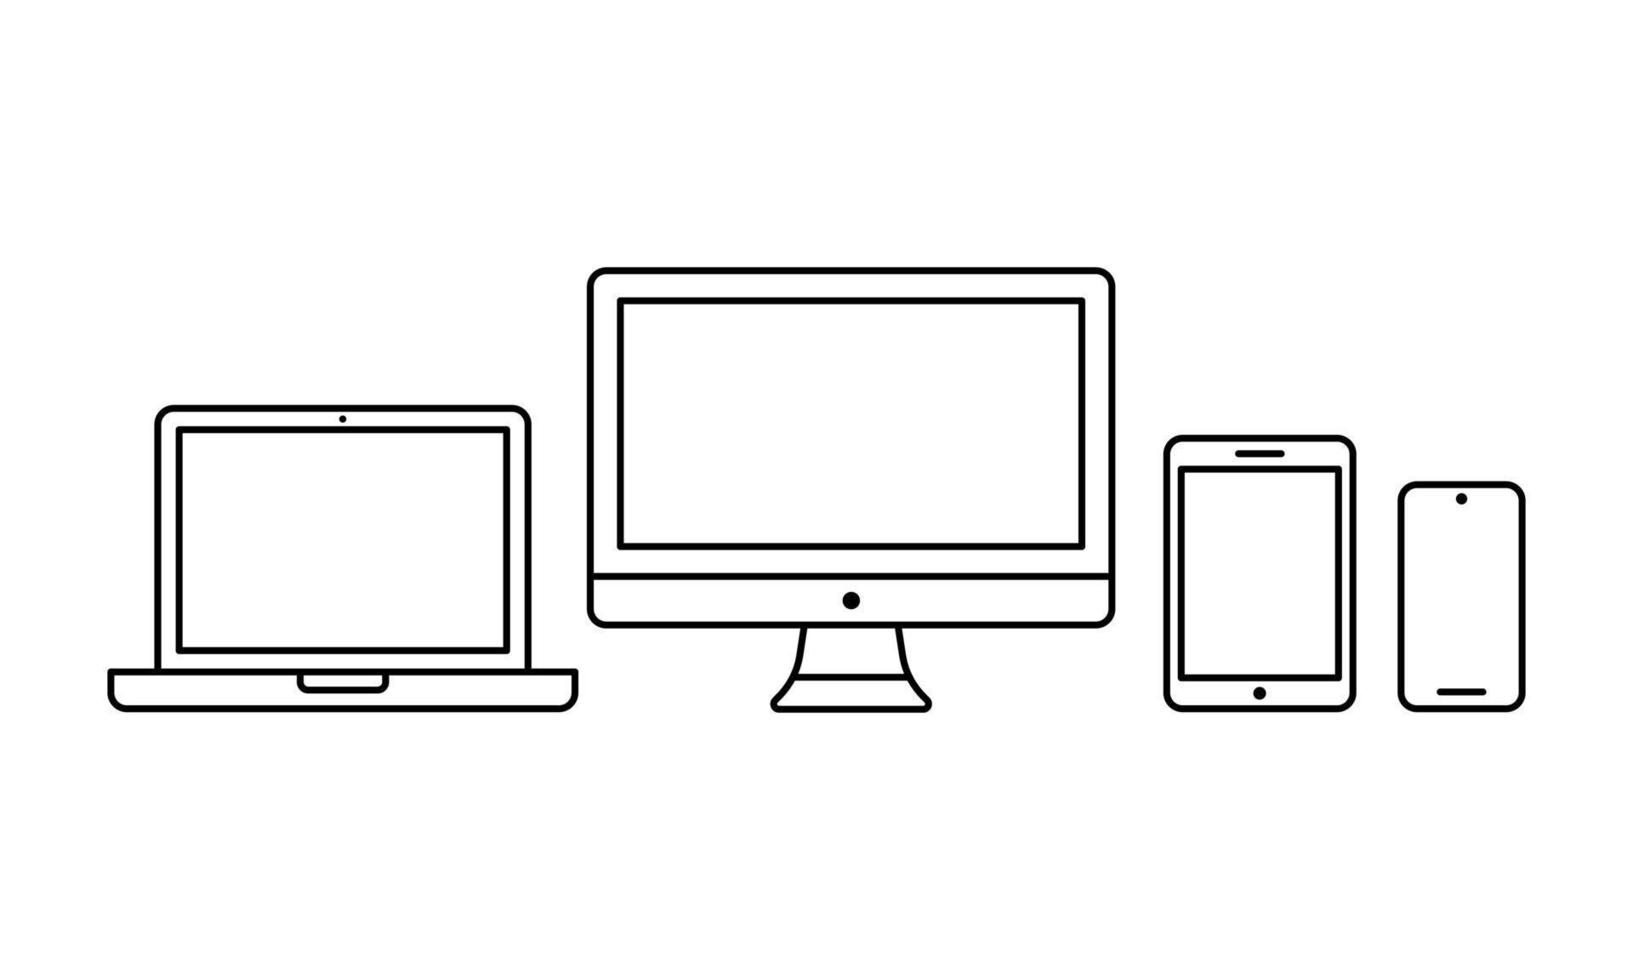 illustrazione vettoriale delineata del moderno ecosistema di prodotti per dispositivi elettronici. adatto per banner tecnologici, computer, smartphone e display per laptop.